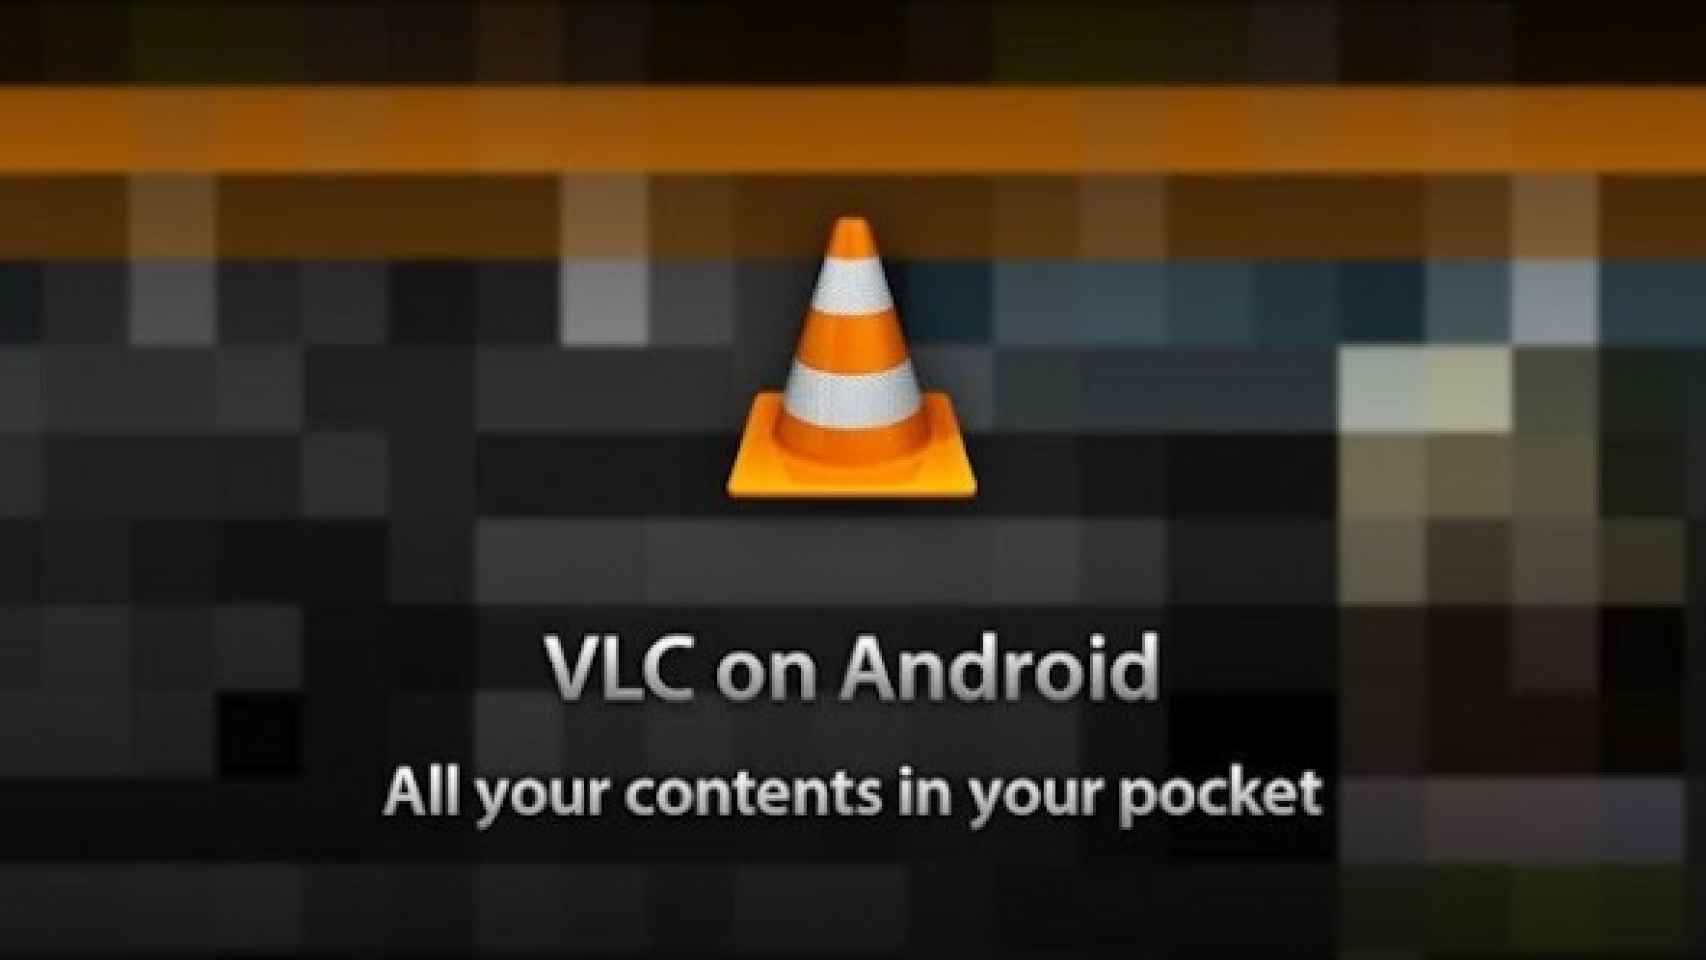 Descarga oficial del Reproductor multimedia VLC, el mejor